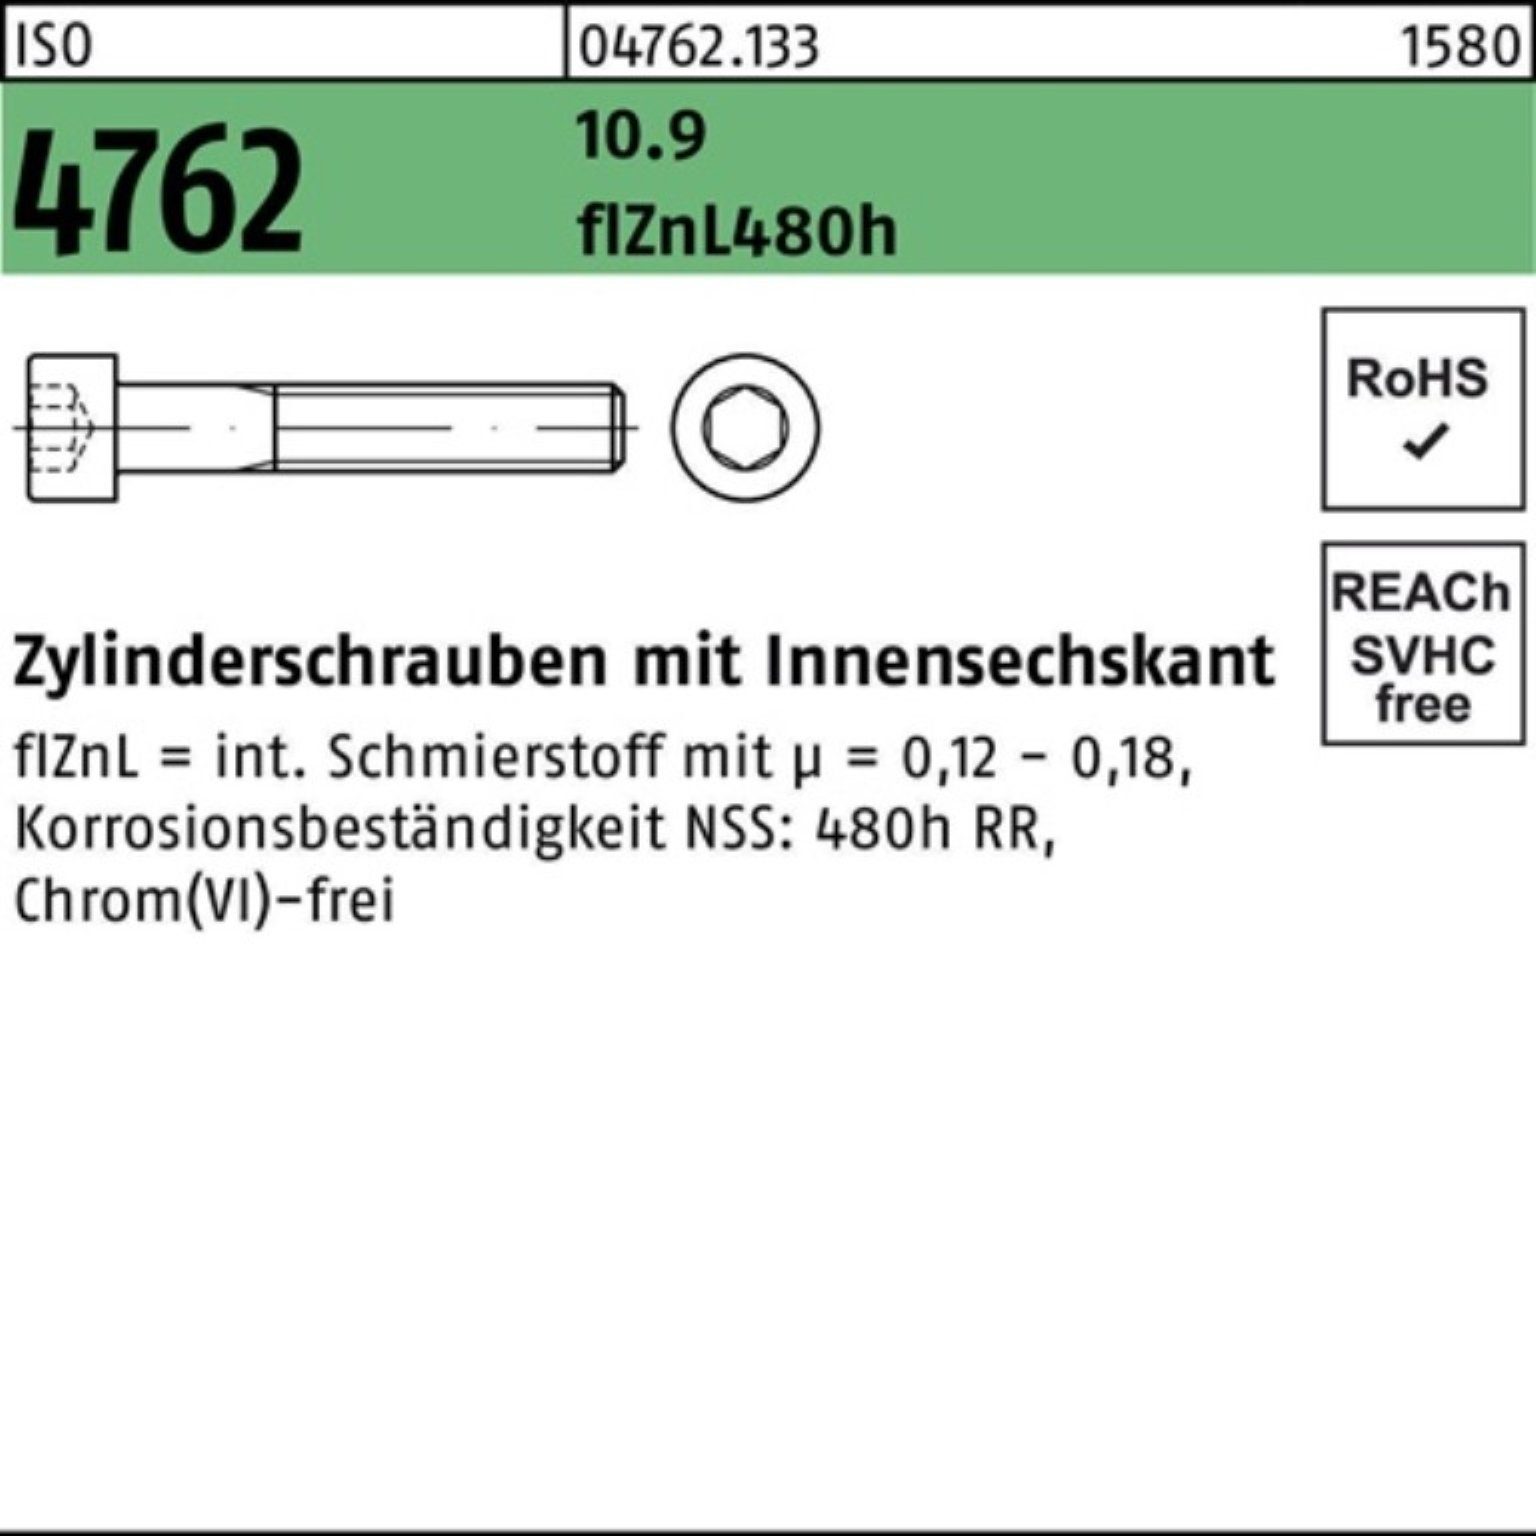 Pack M20x180 100er Reyher ISO 10.9 Innen-6kt Zylinderschraube Zylinderschraube 4762 zinklamell